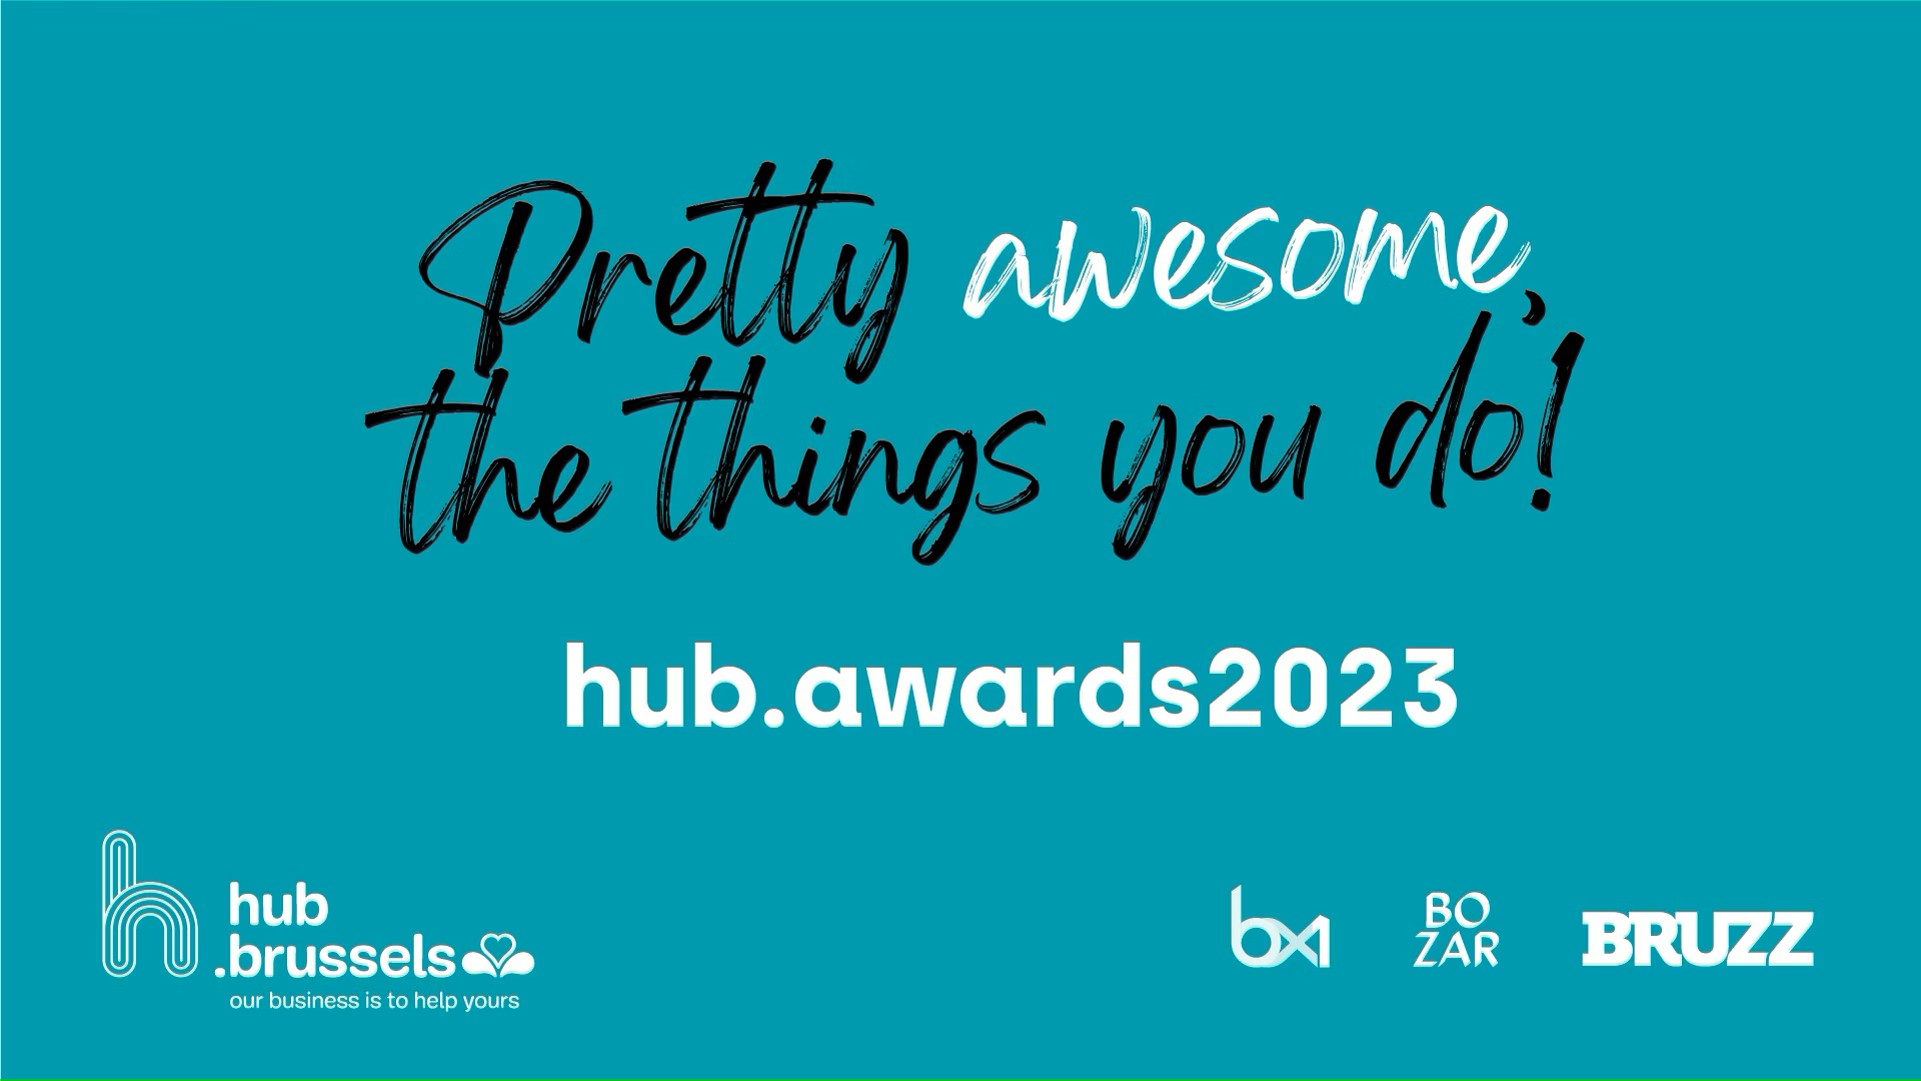 HUB.Awards 2023